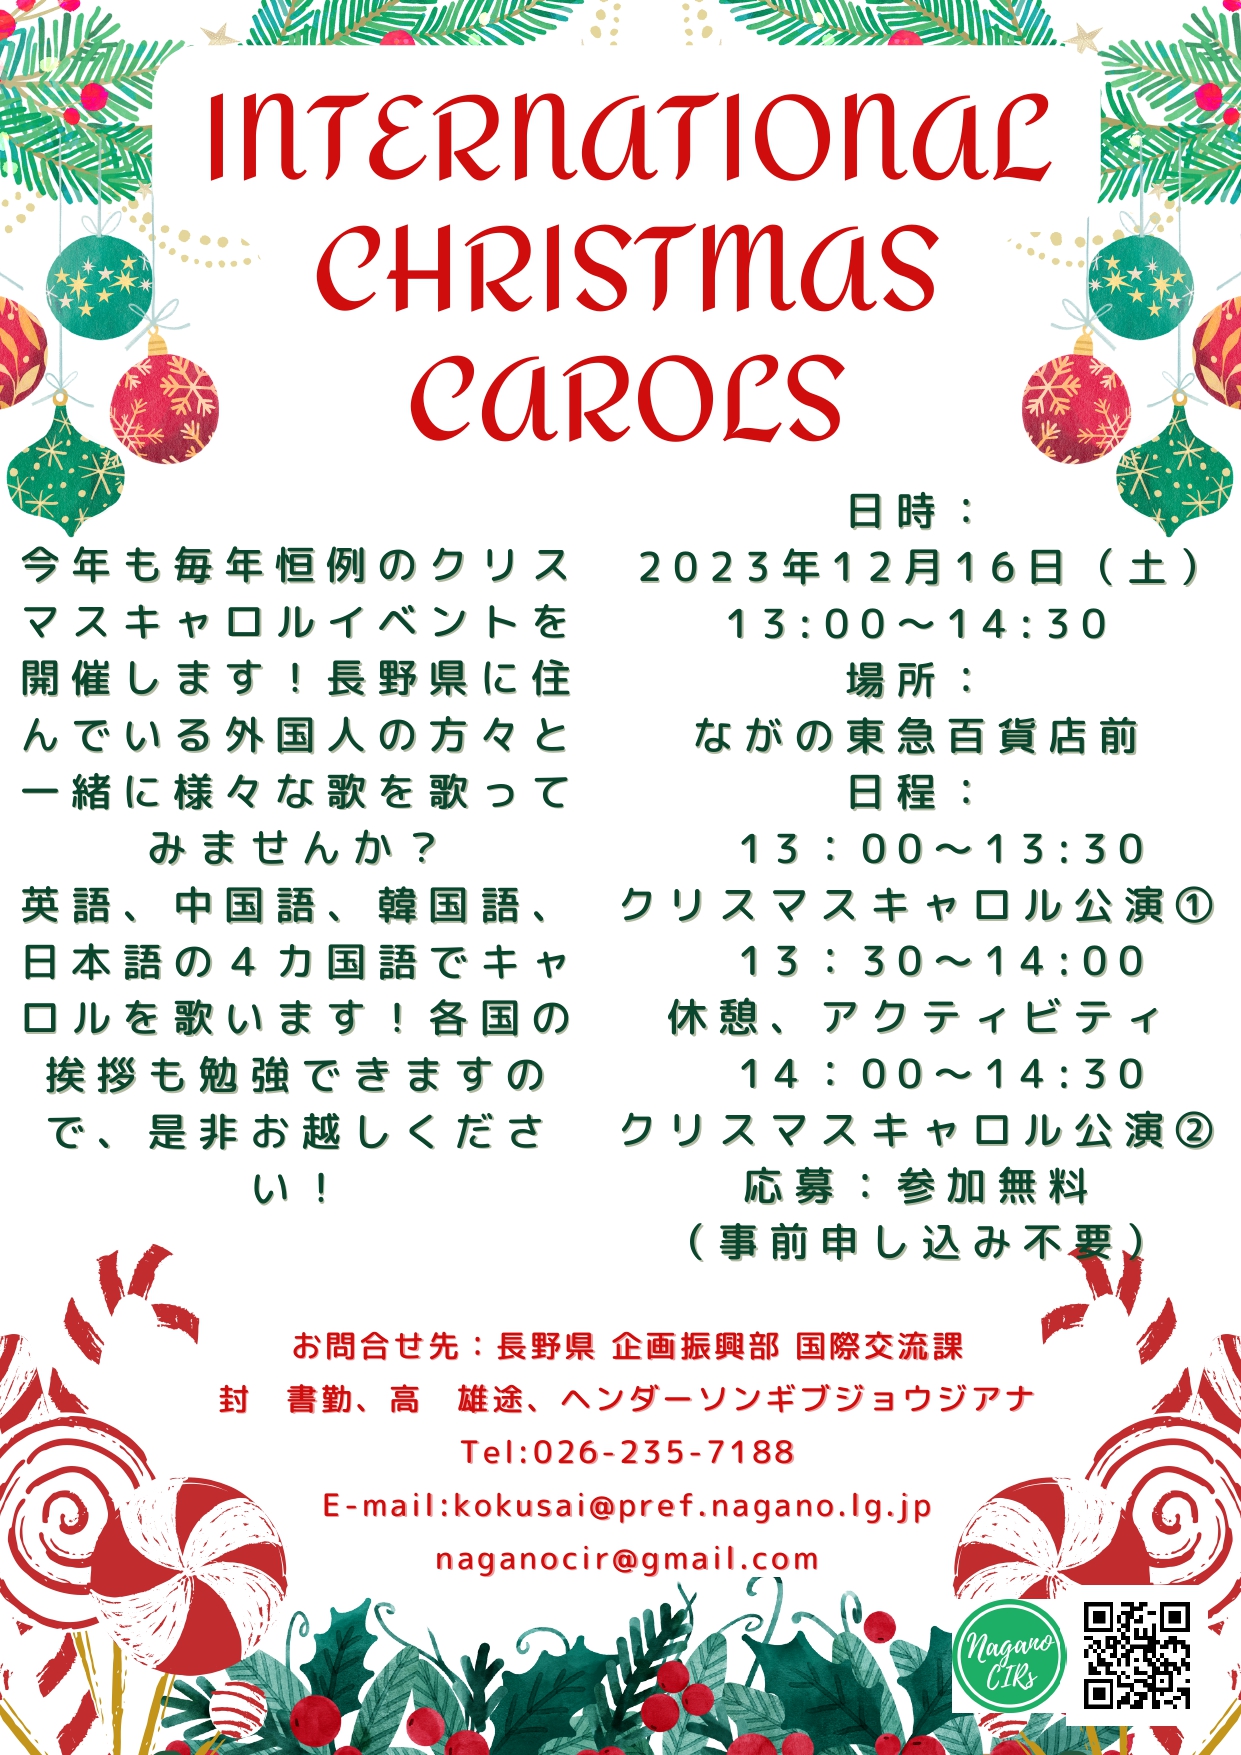 クリスマスの イベント